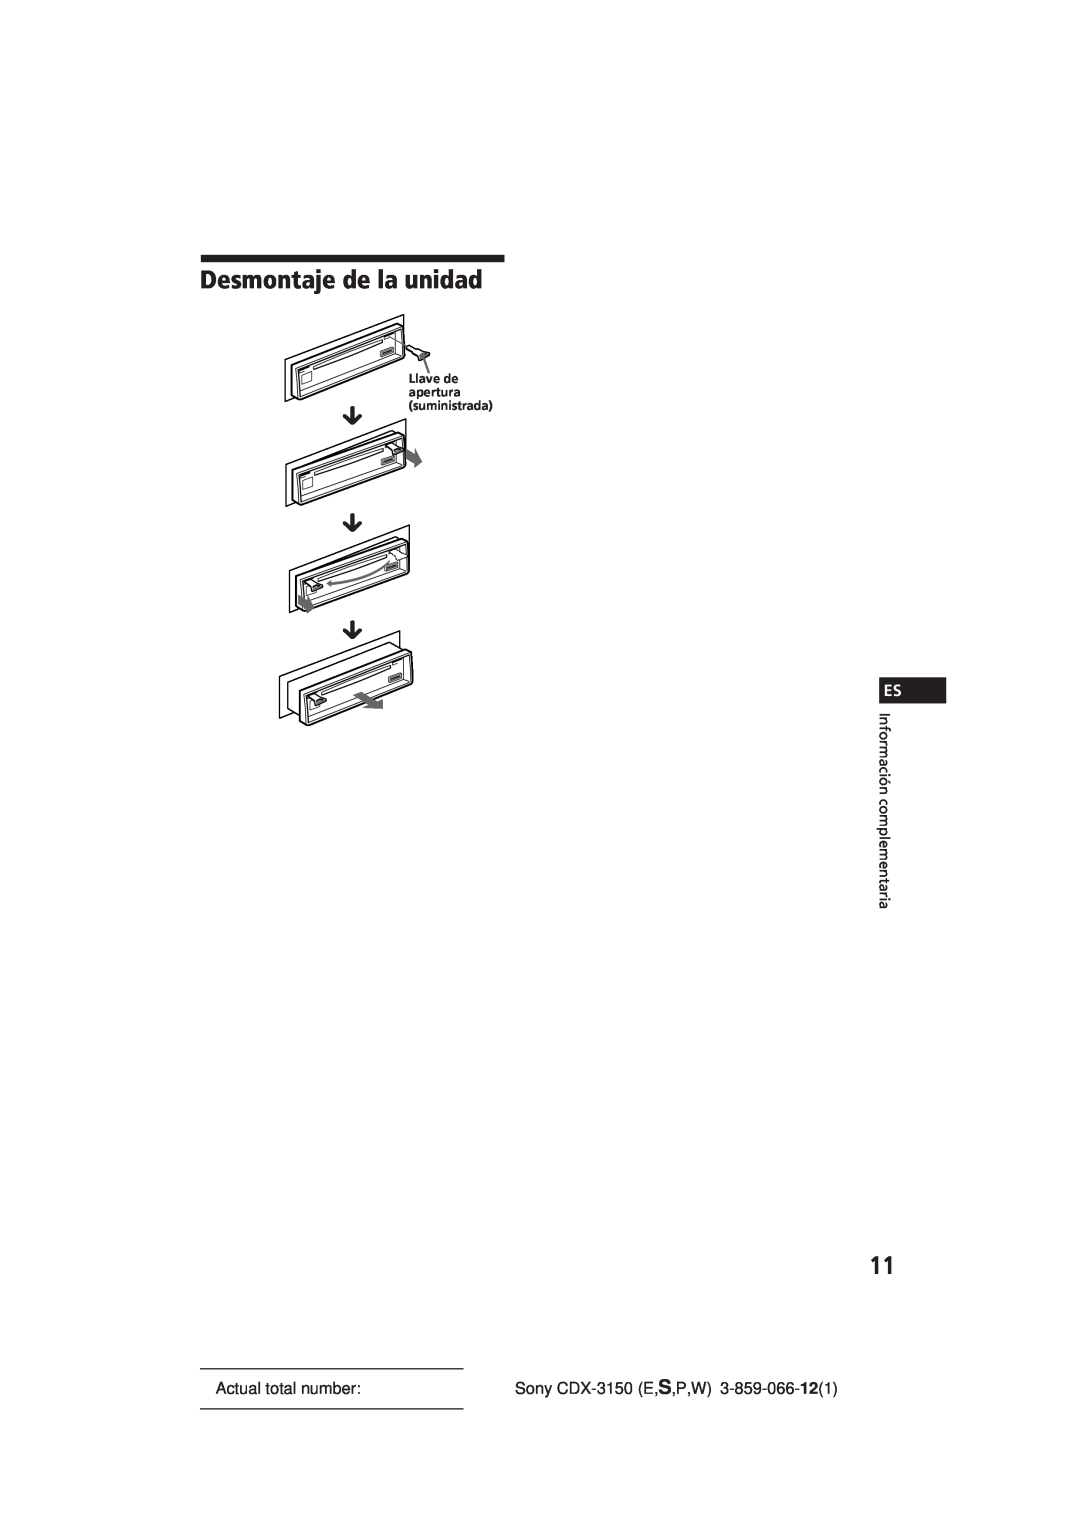 Sony manual Desmontaje de la unidad, Información complementaria, µ µ µ, Actual total number, Sony CDX-3150E,S,P,W 